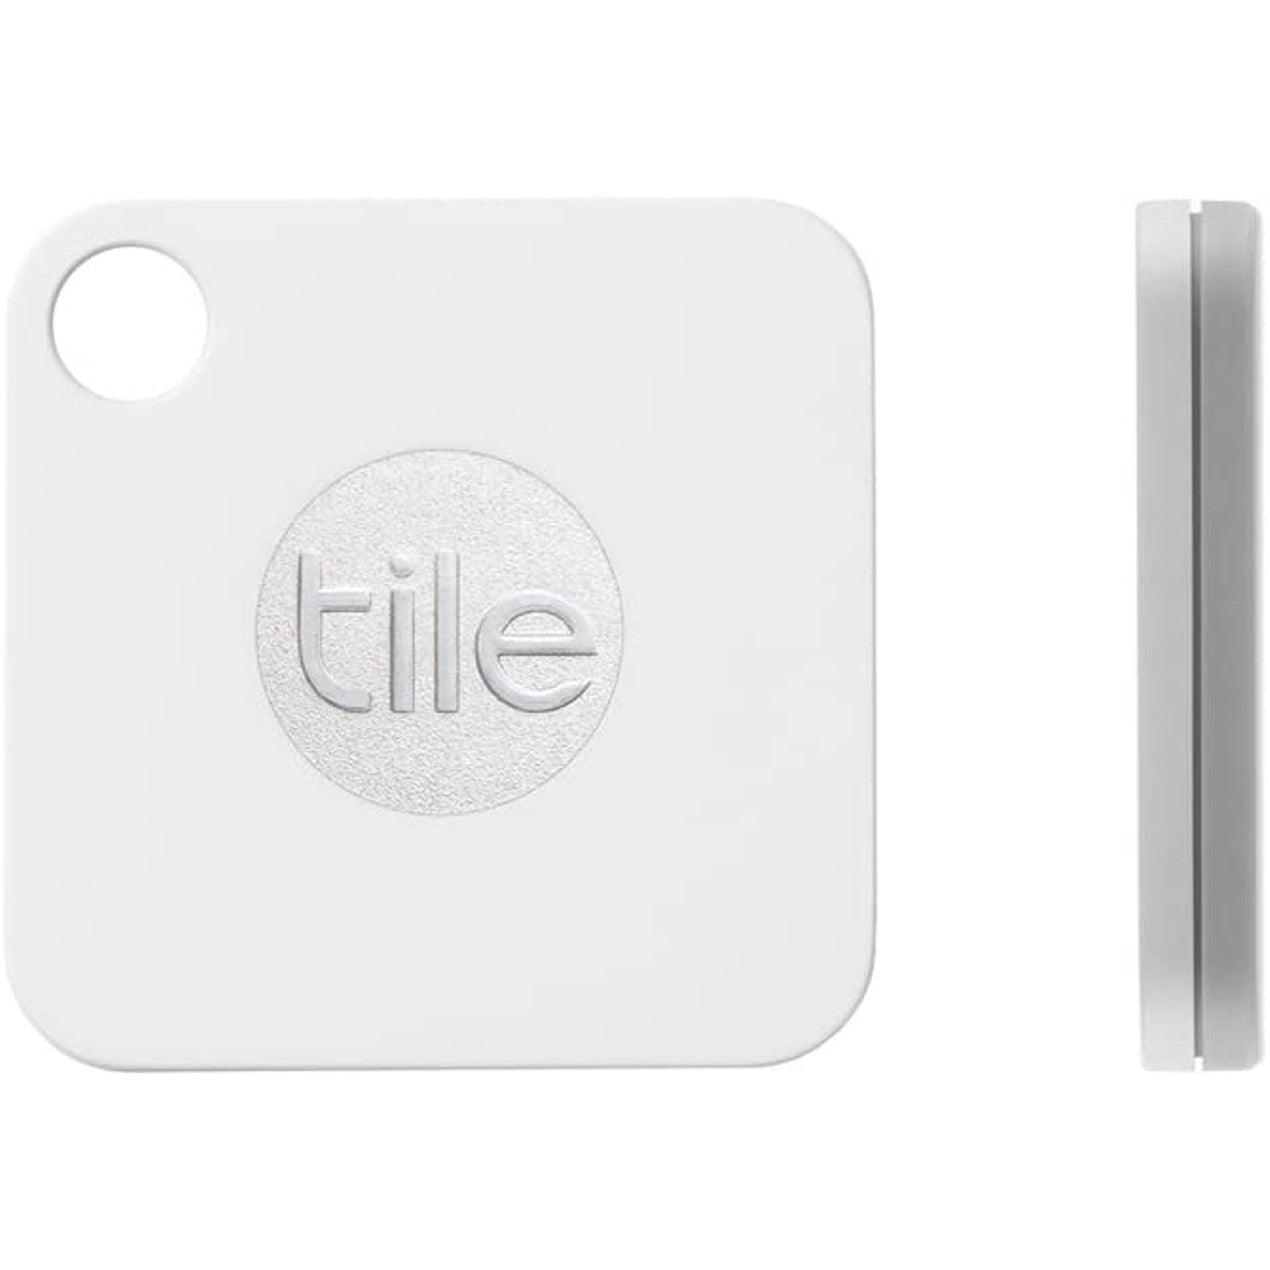 Tile Mate (2016) - Bluetooth Tracker - Never Lose Your Belongings - PremiumBrandGoods